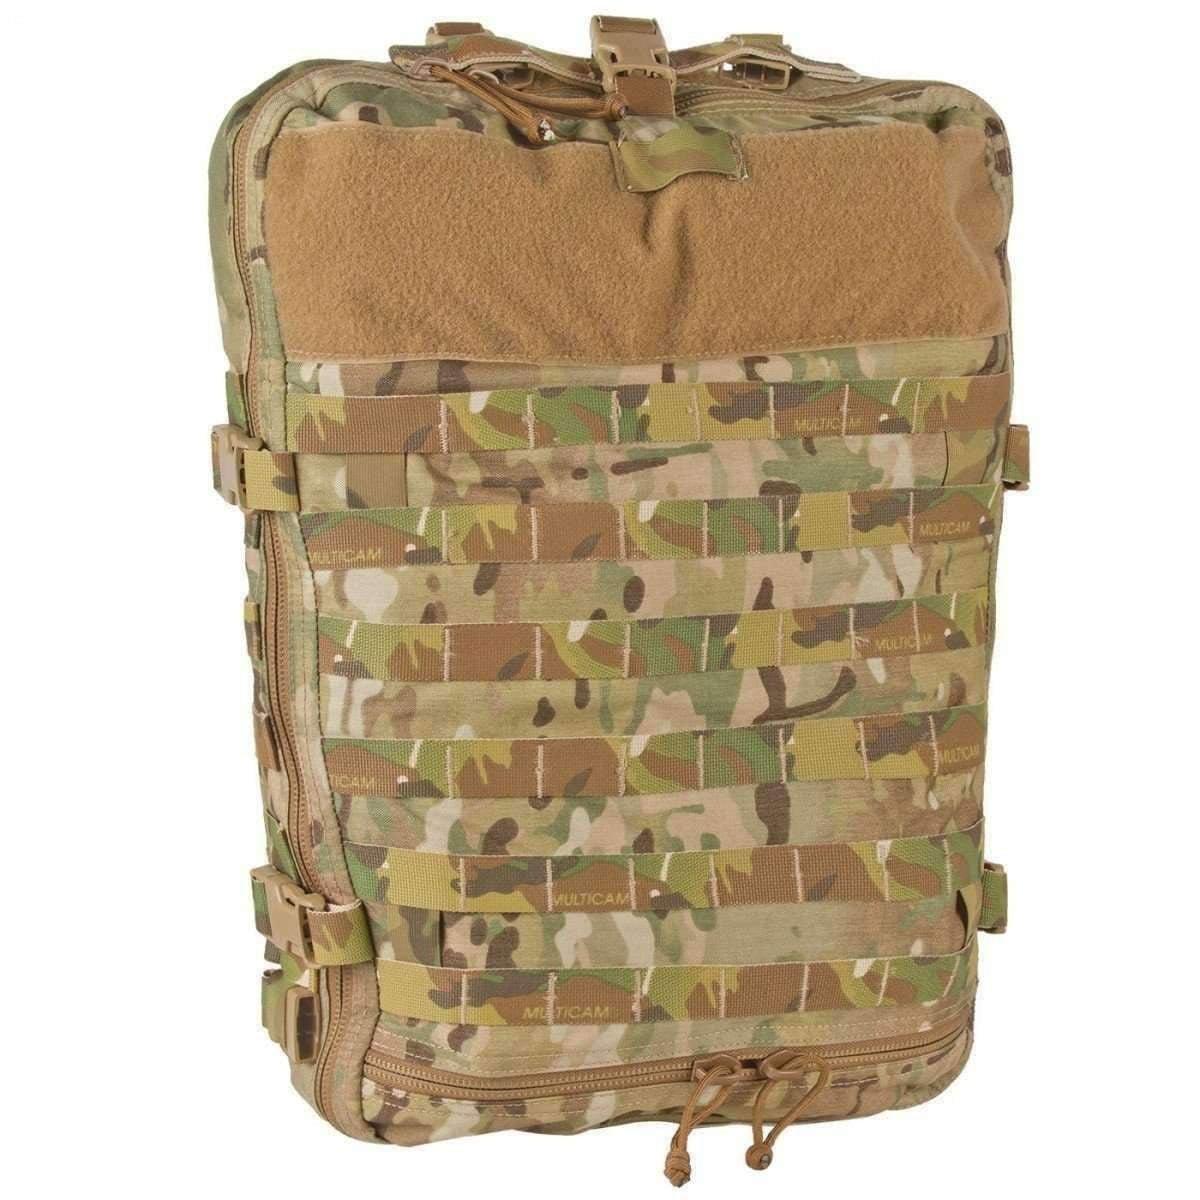 NAR-4 Aid Bag - Vendor